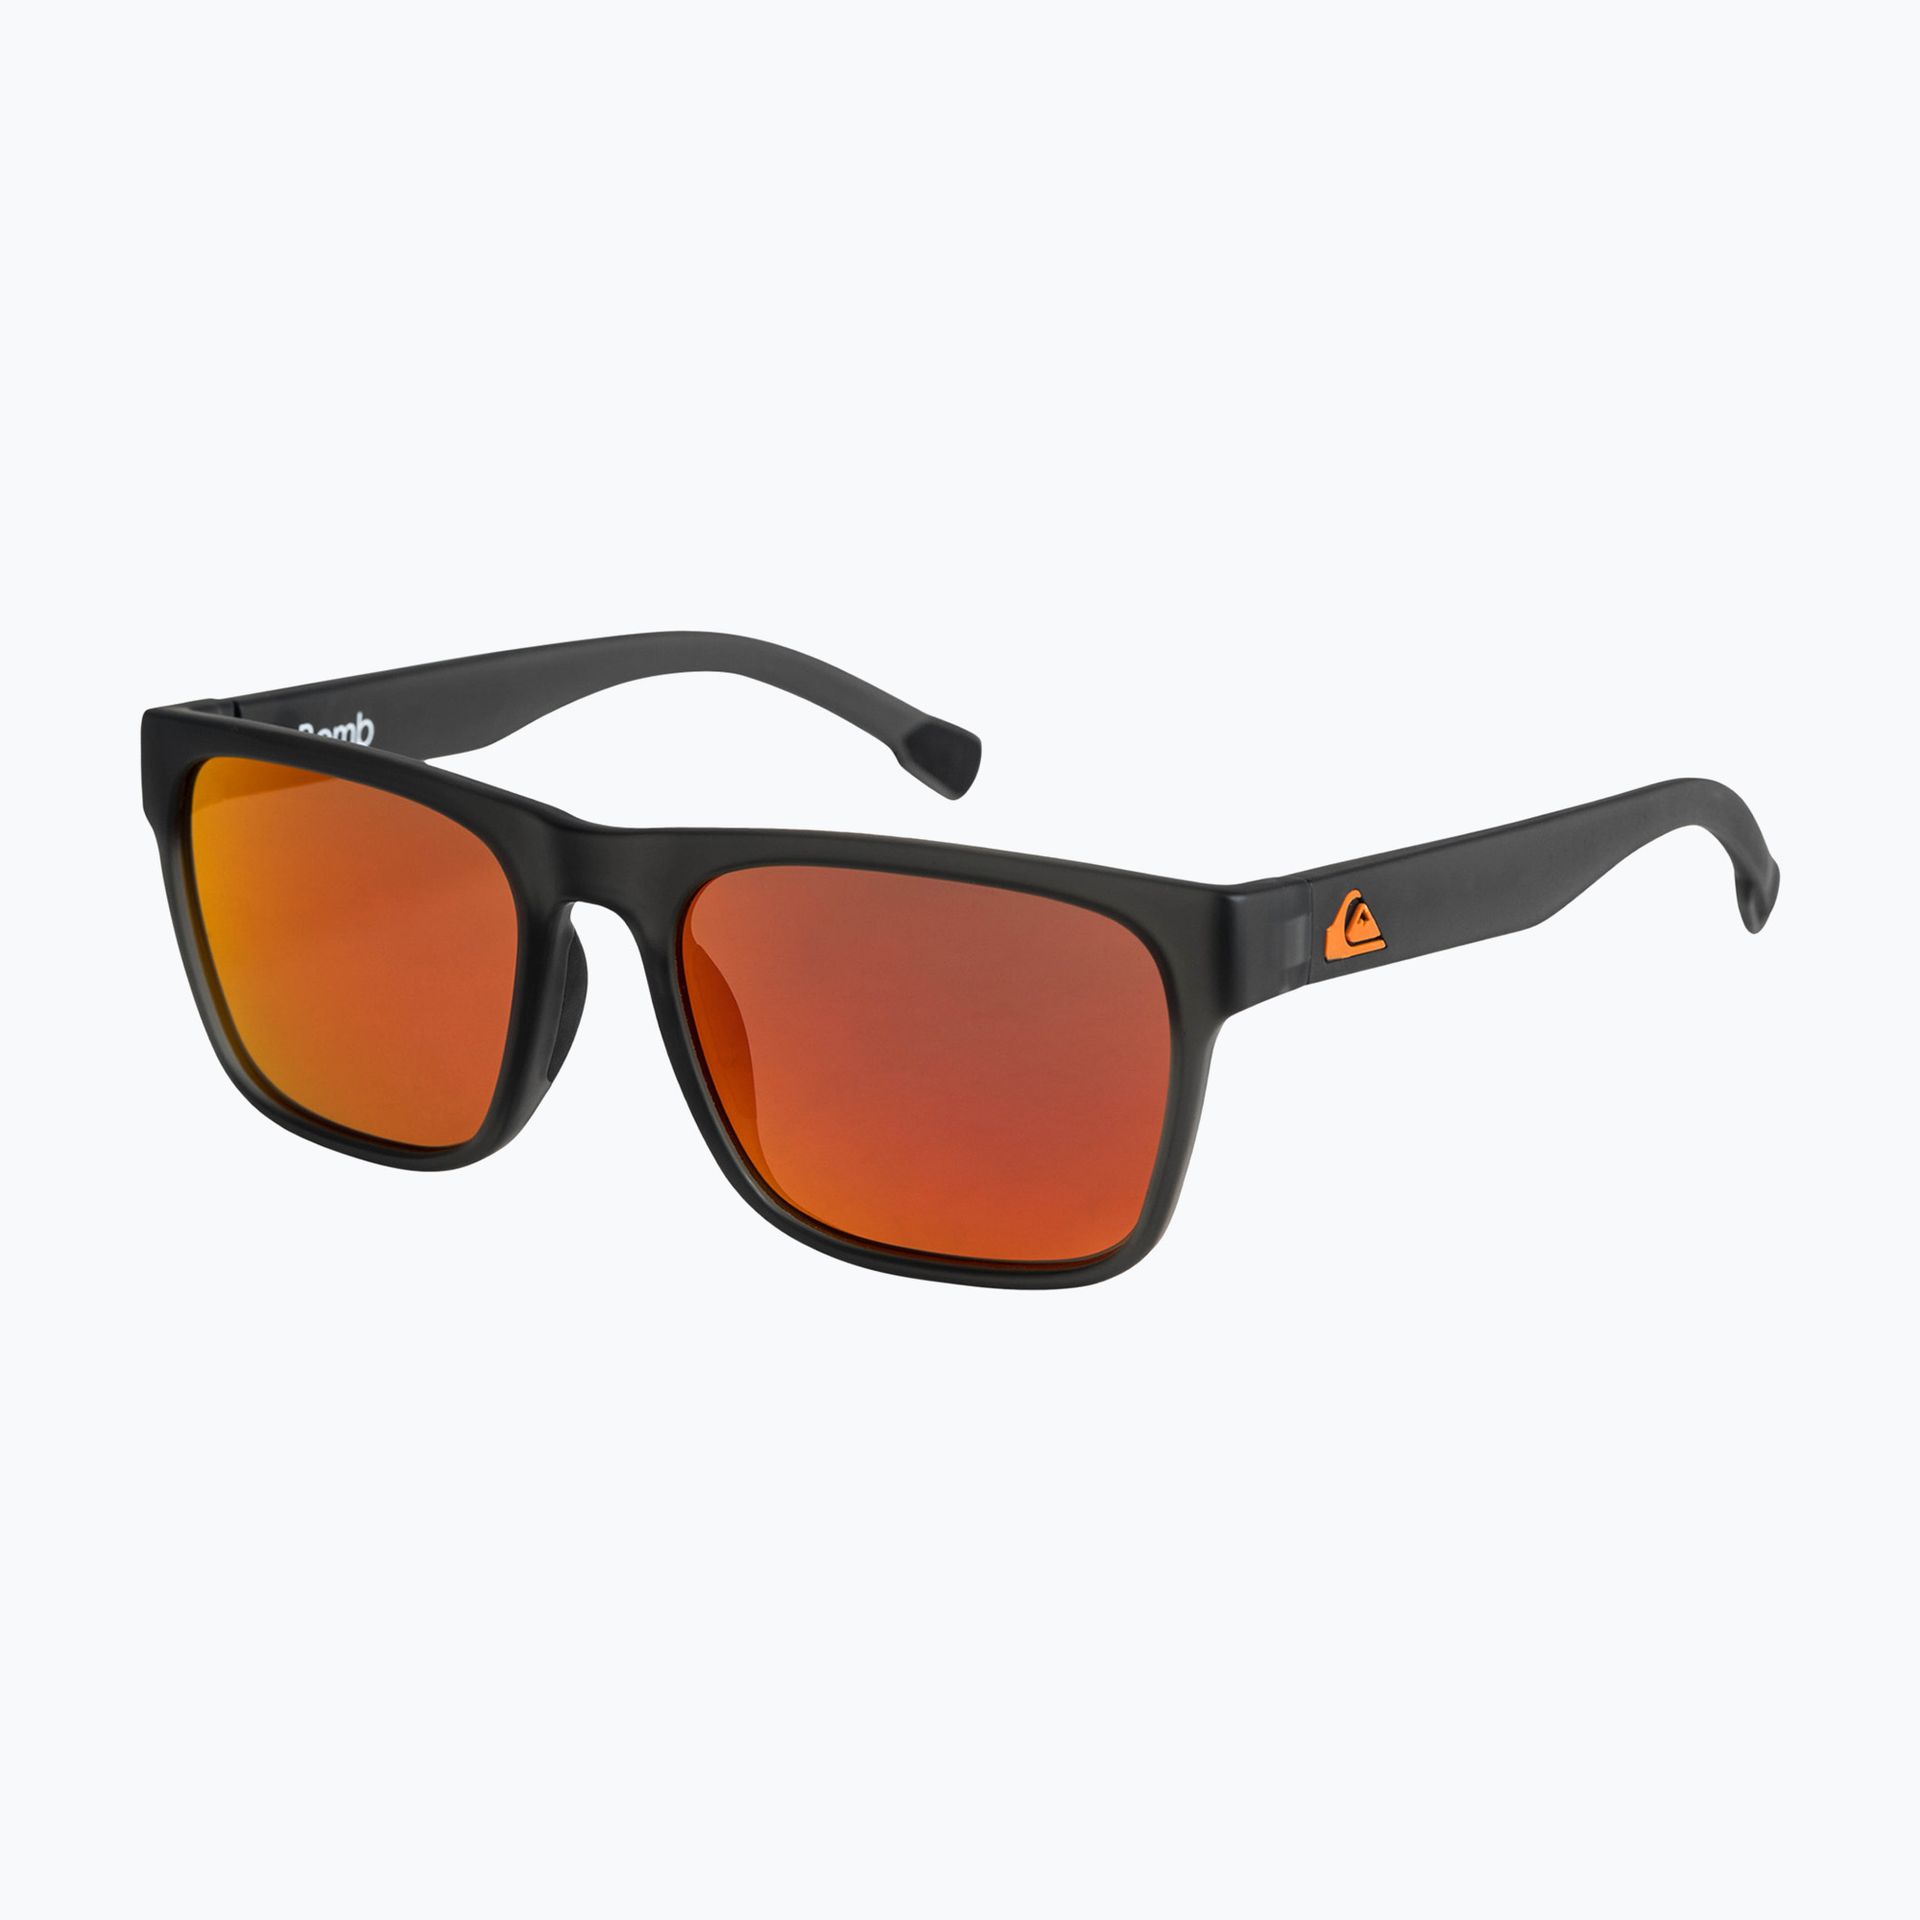 Okulary przeciwsłoneczne Quiksilver Bomb grey/ml orange | WYSYŁKA W 24H | 30 DNI NA ZWROT